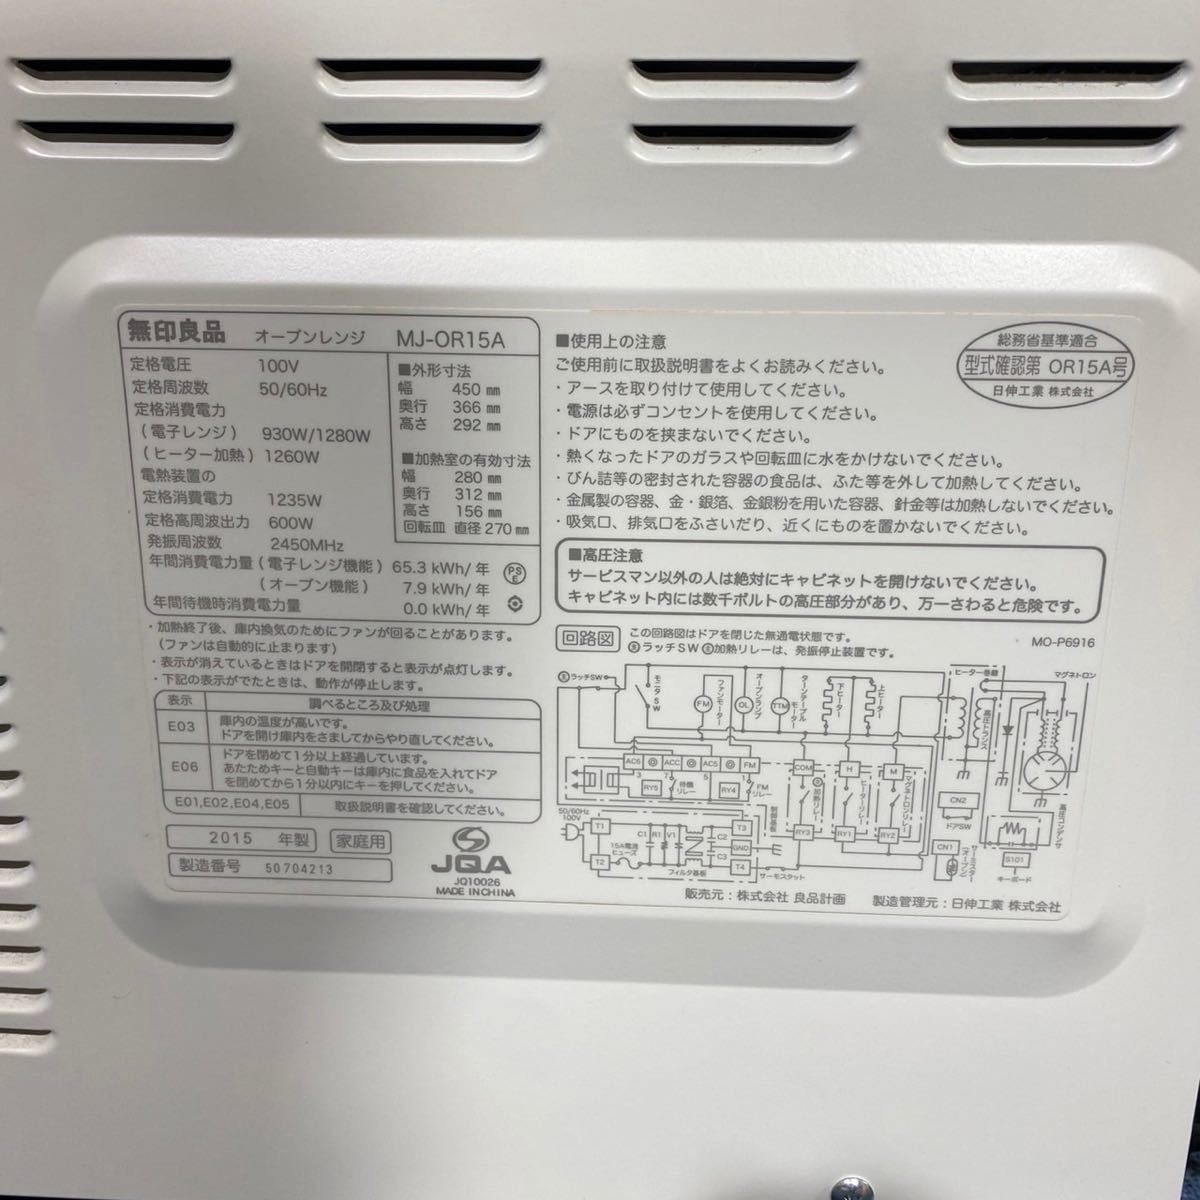 無印良品 オーブンレンジ MJ-OR15A 家電 キッチン シンプル MUJI